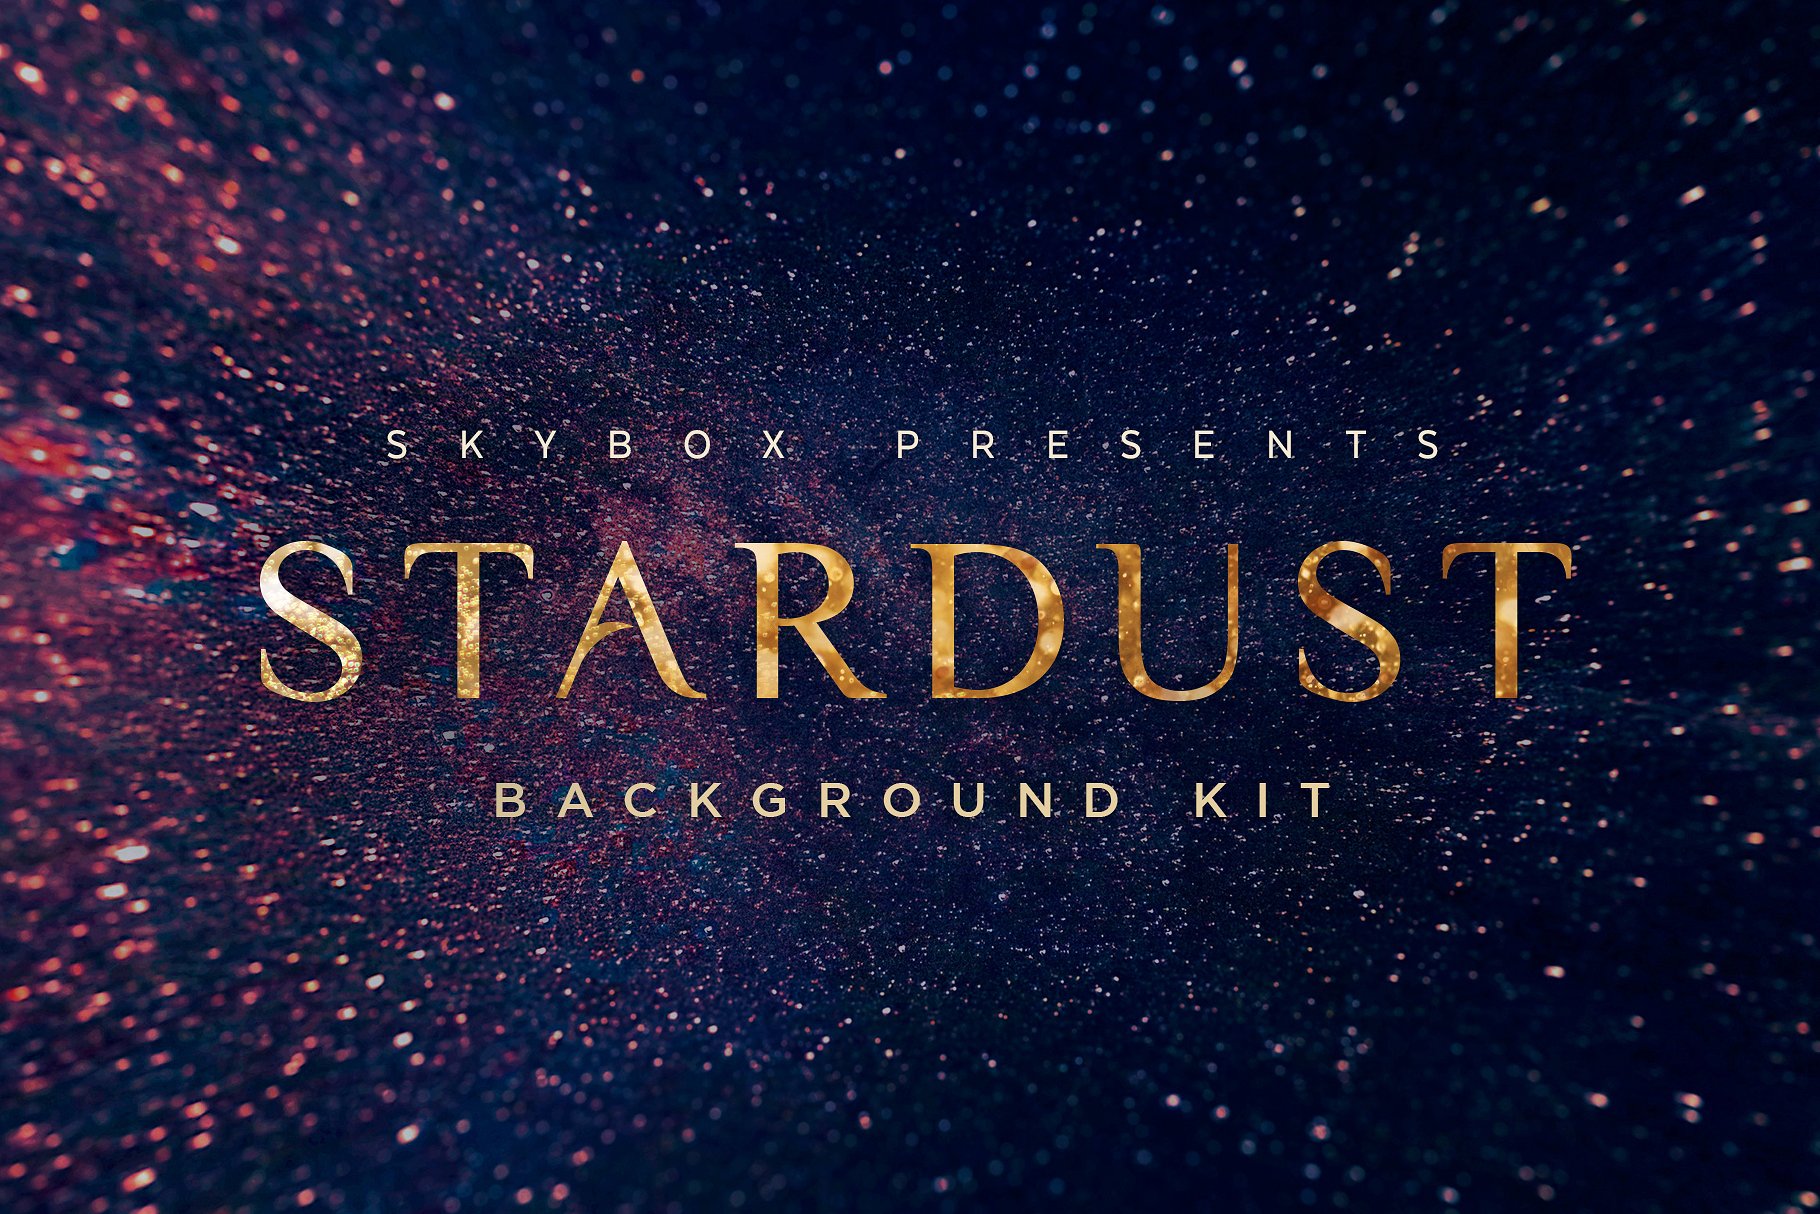 迷离闪烁星团和宇宙背景套件 Stardust Universe Background Kit插图11